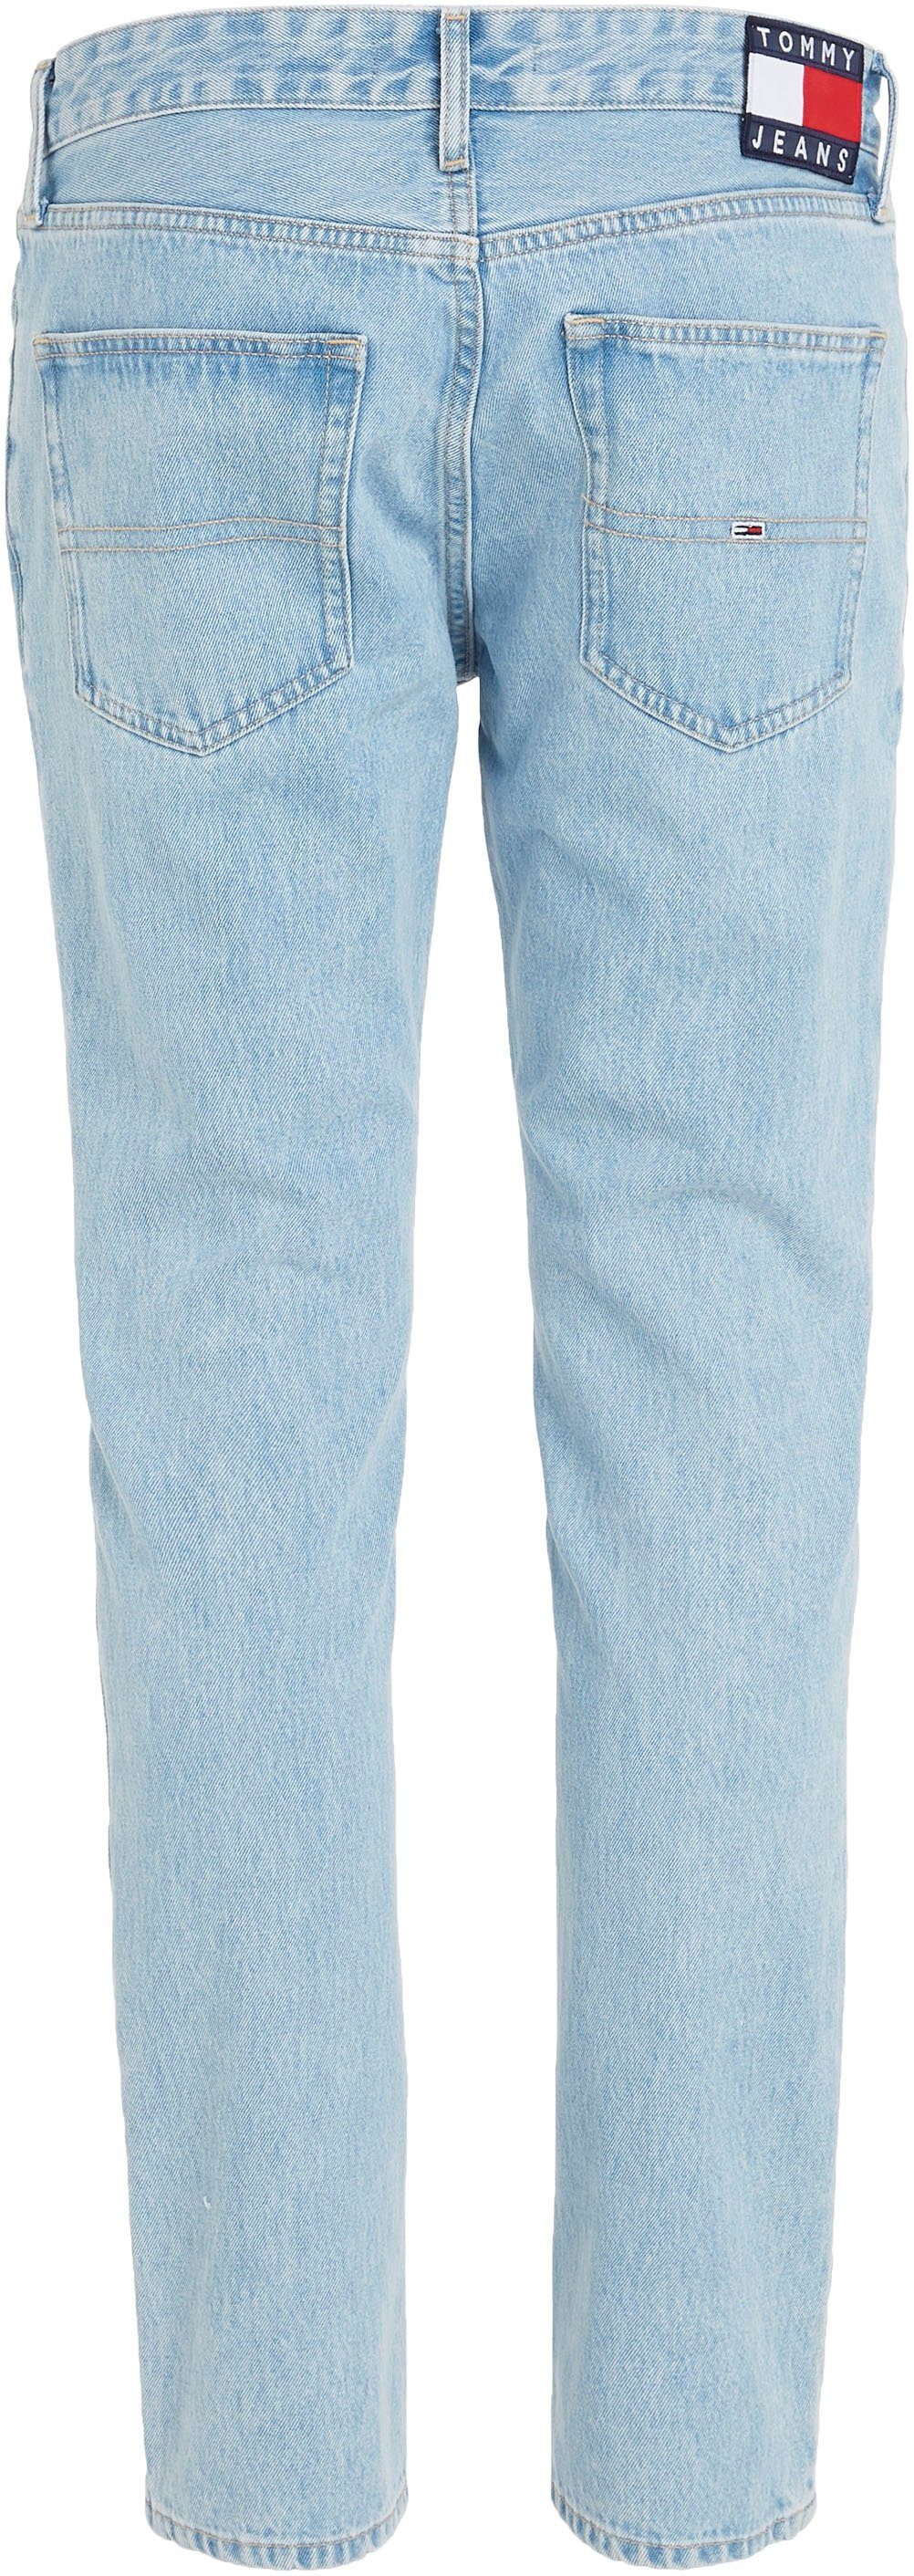 SCANTON BG4015 5-Pocket-Stil Jeans im Tommy SLIM Slim-fit-Jeans